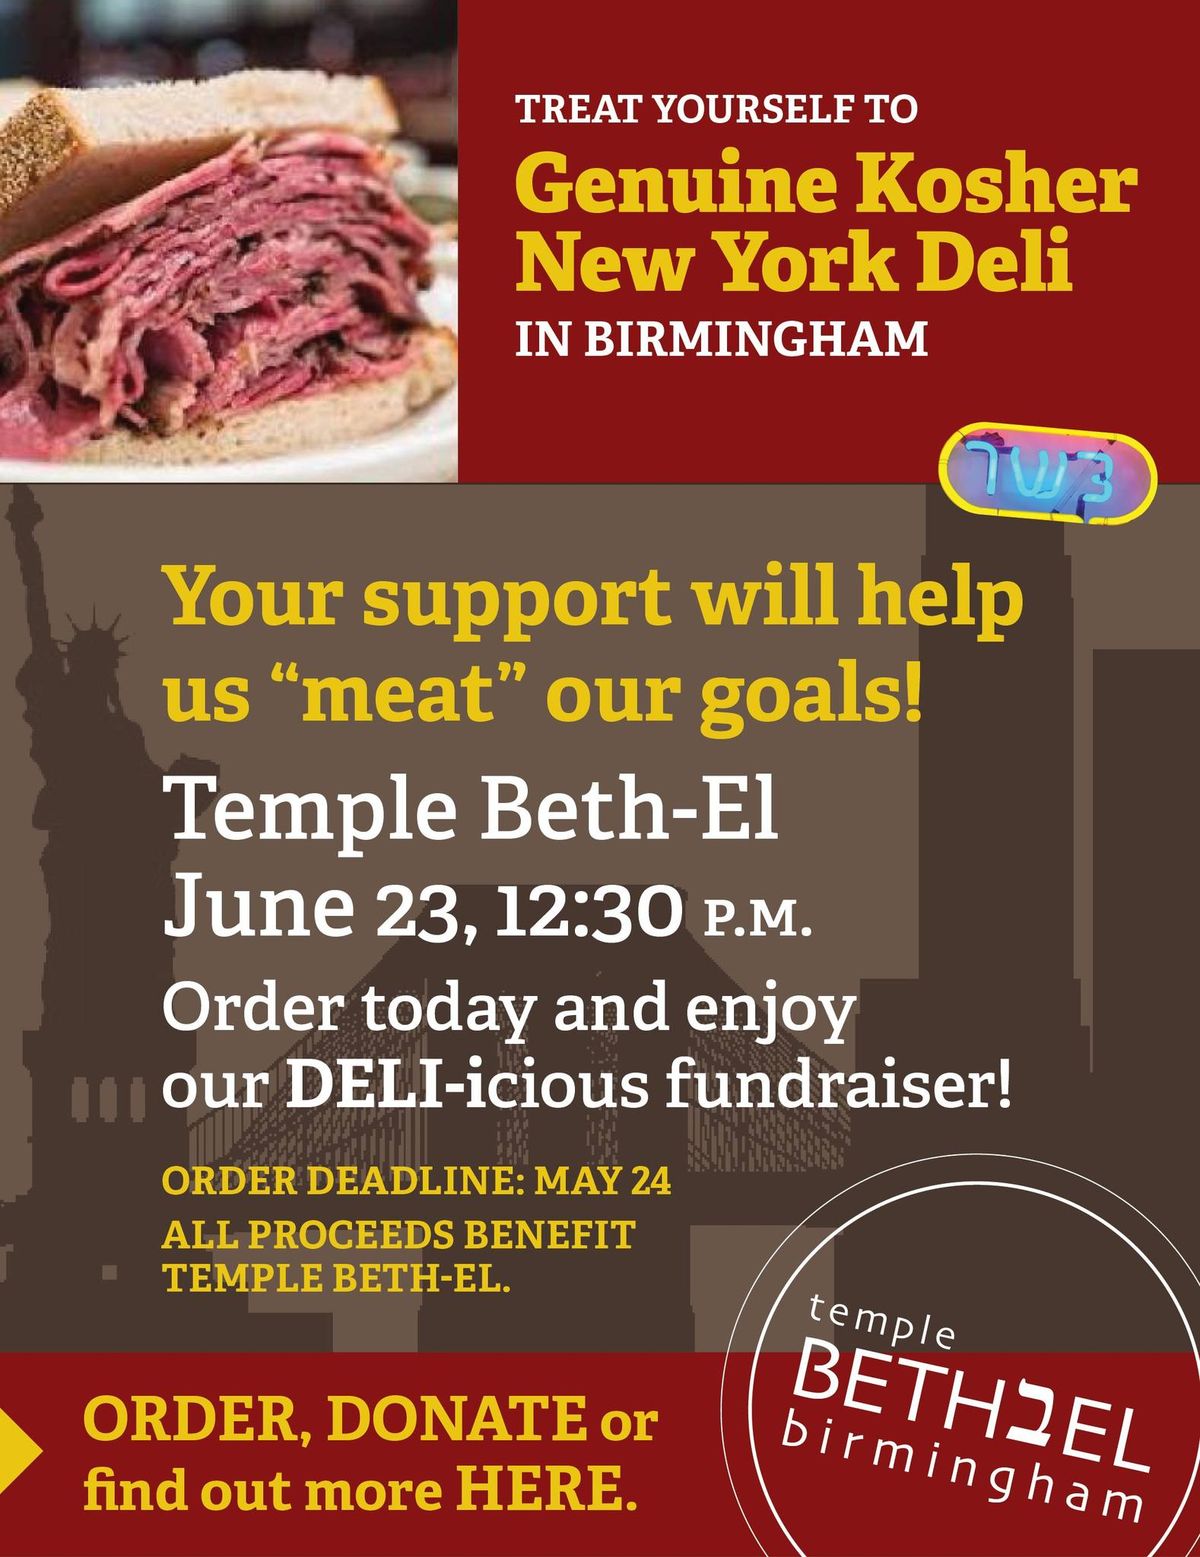 DELI-icious Fundraiser at Temple Beth El 